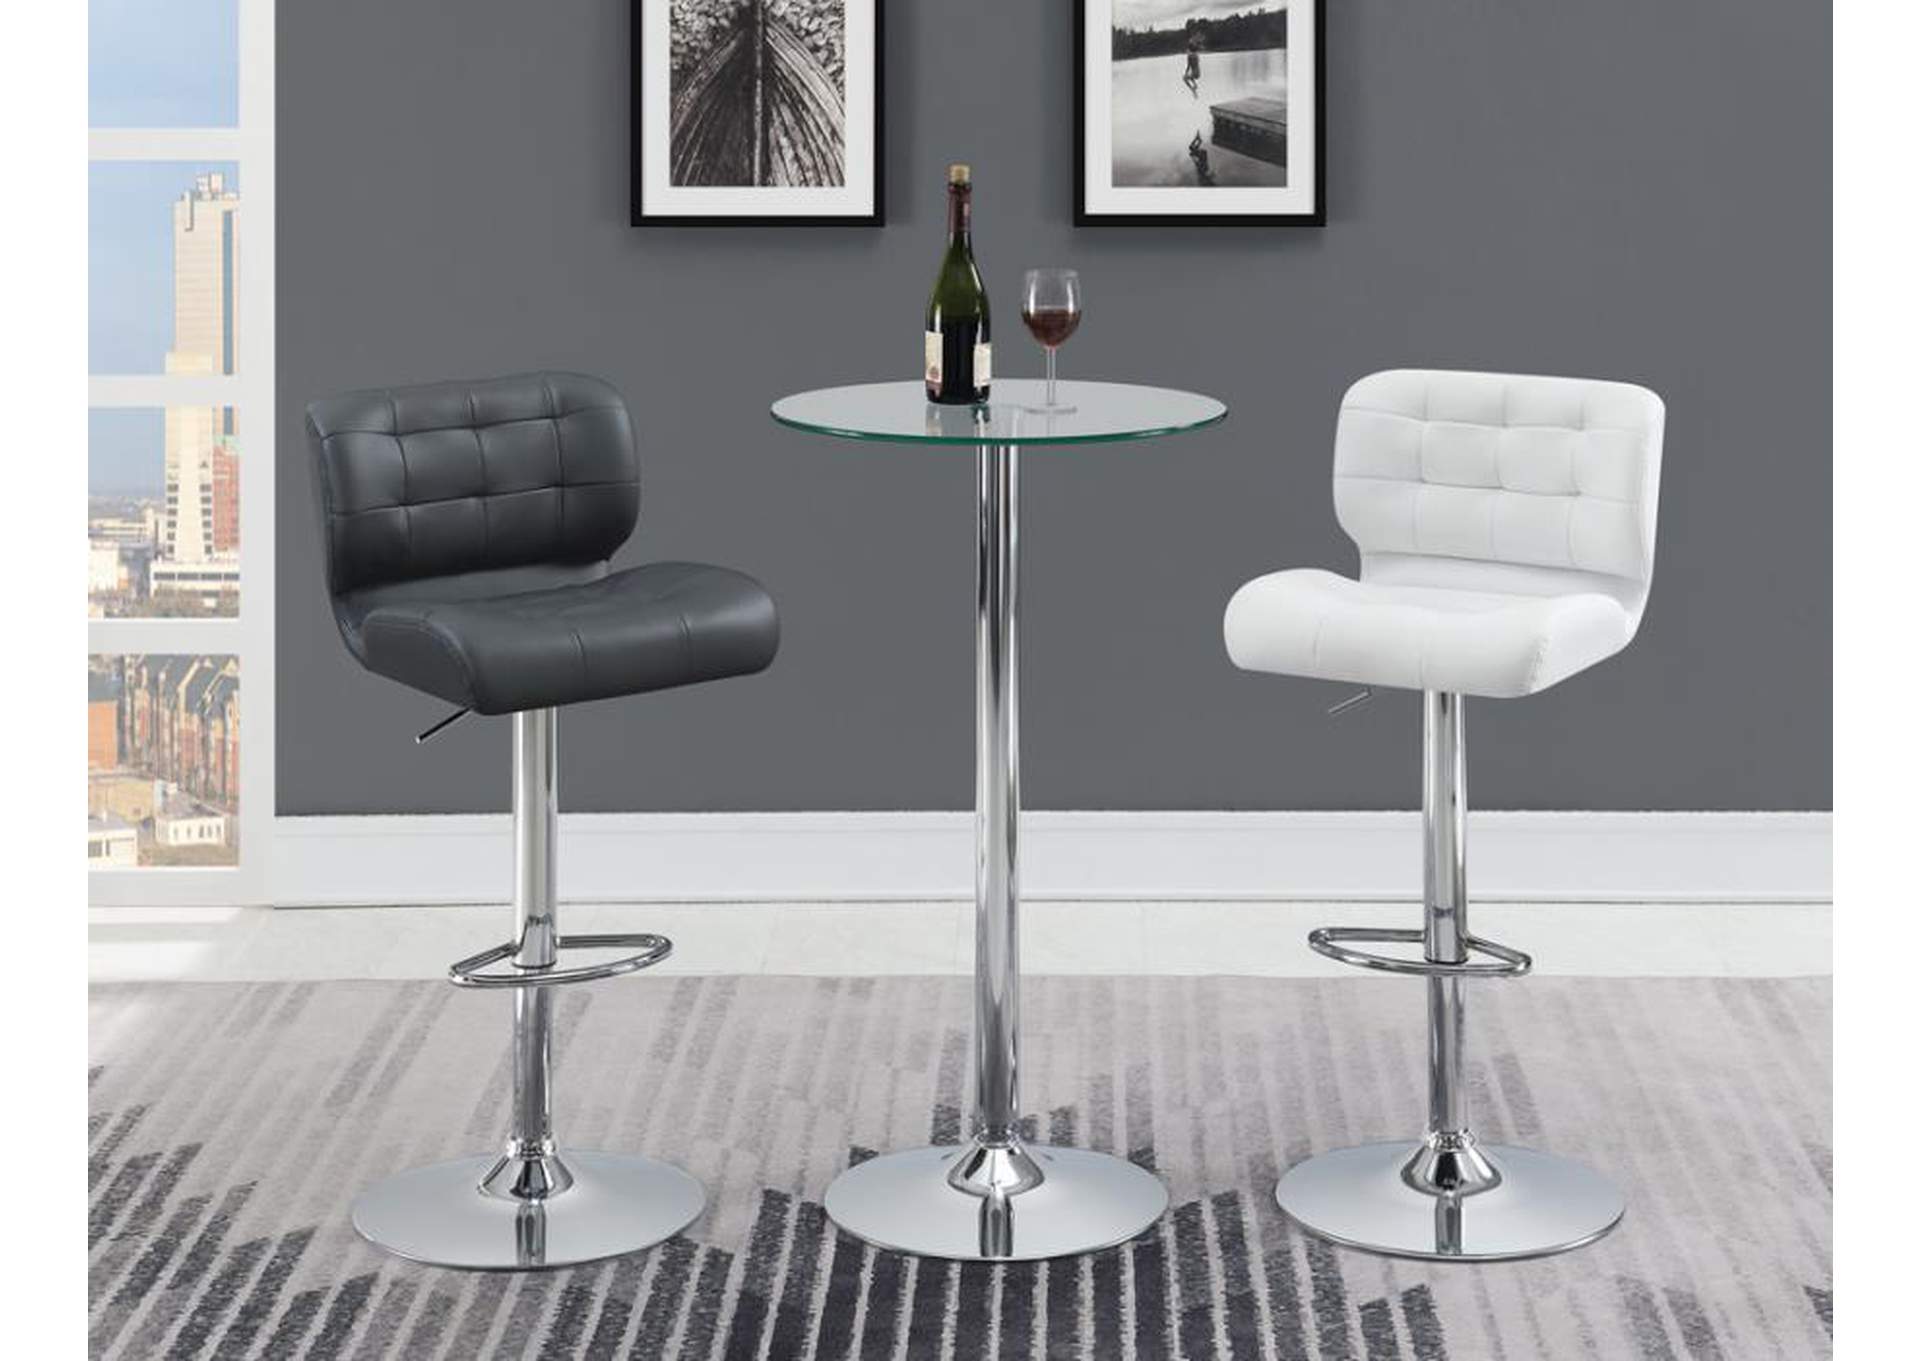 Azalea Upholstered Adjustable Bar Stools Chrome And Grey (Set Of 2),Coaster Furniture